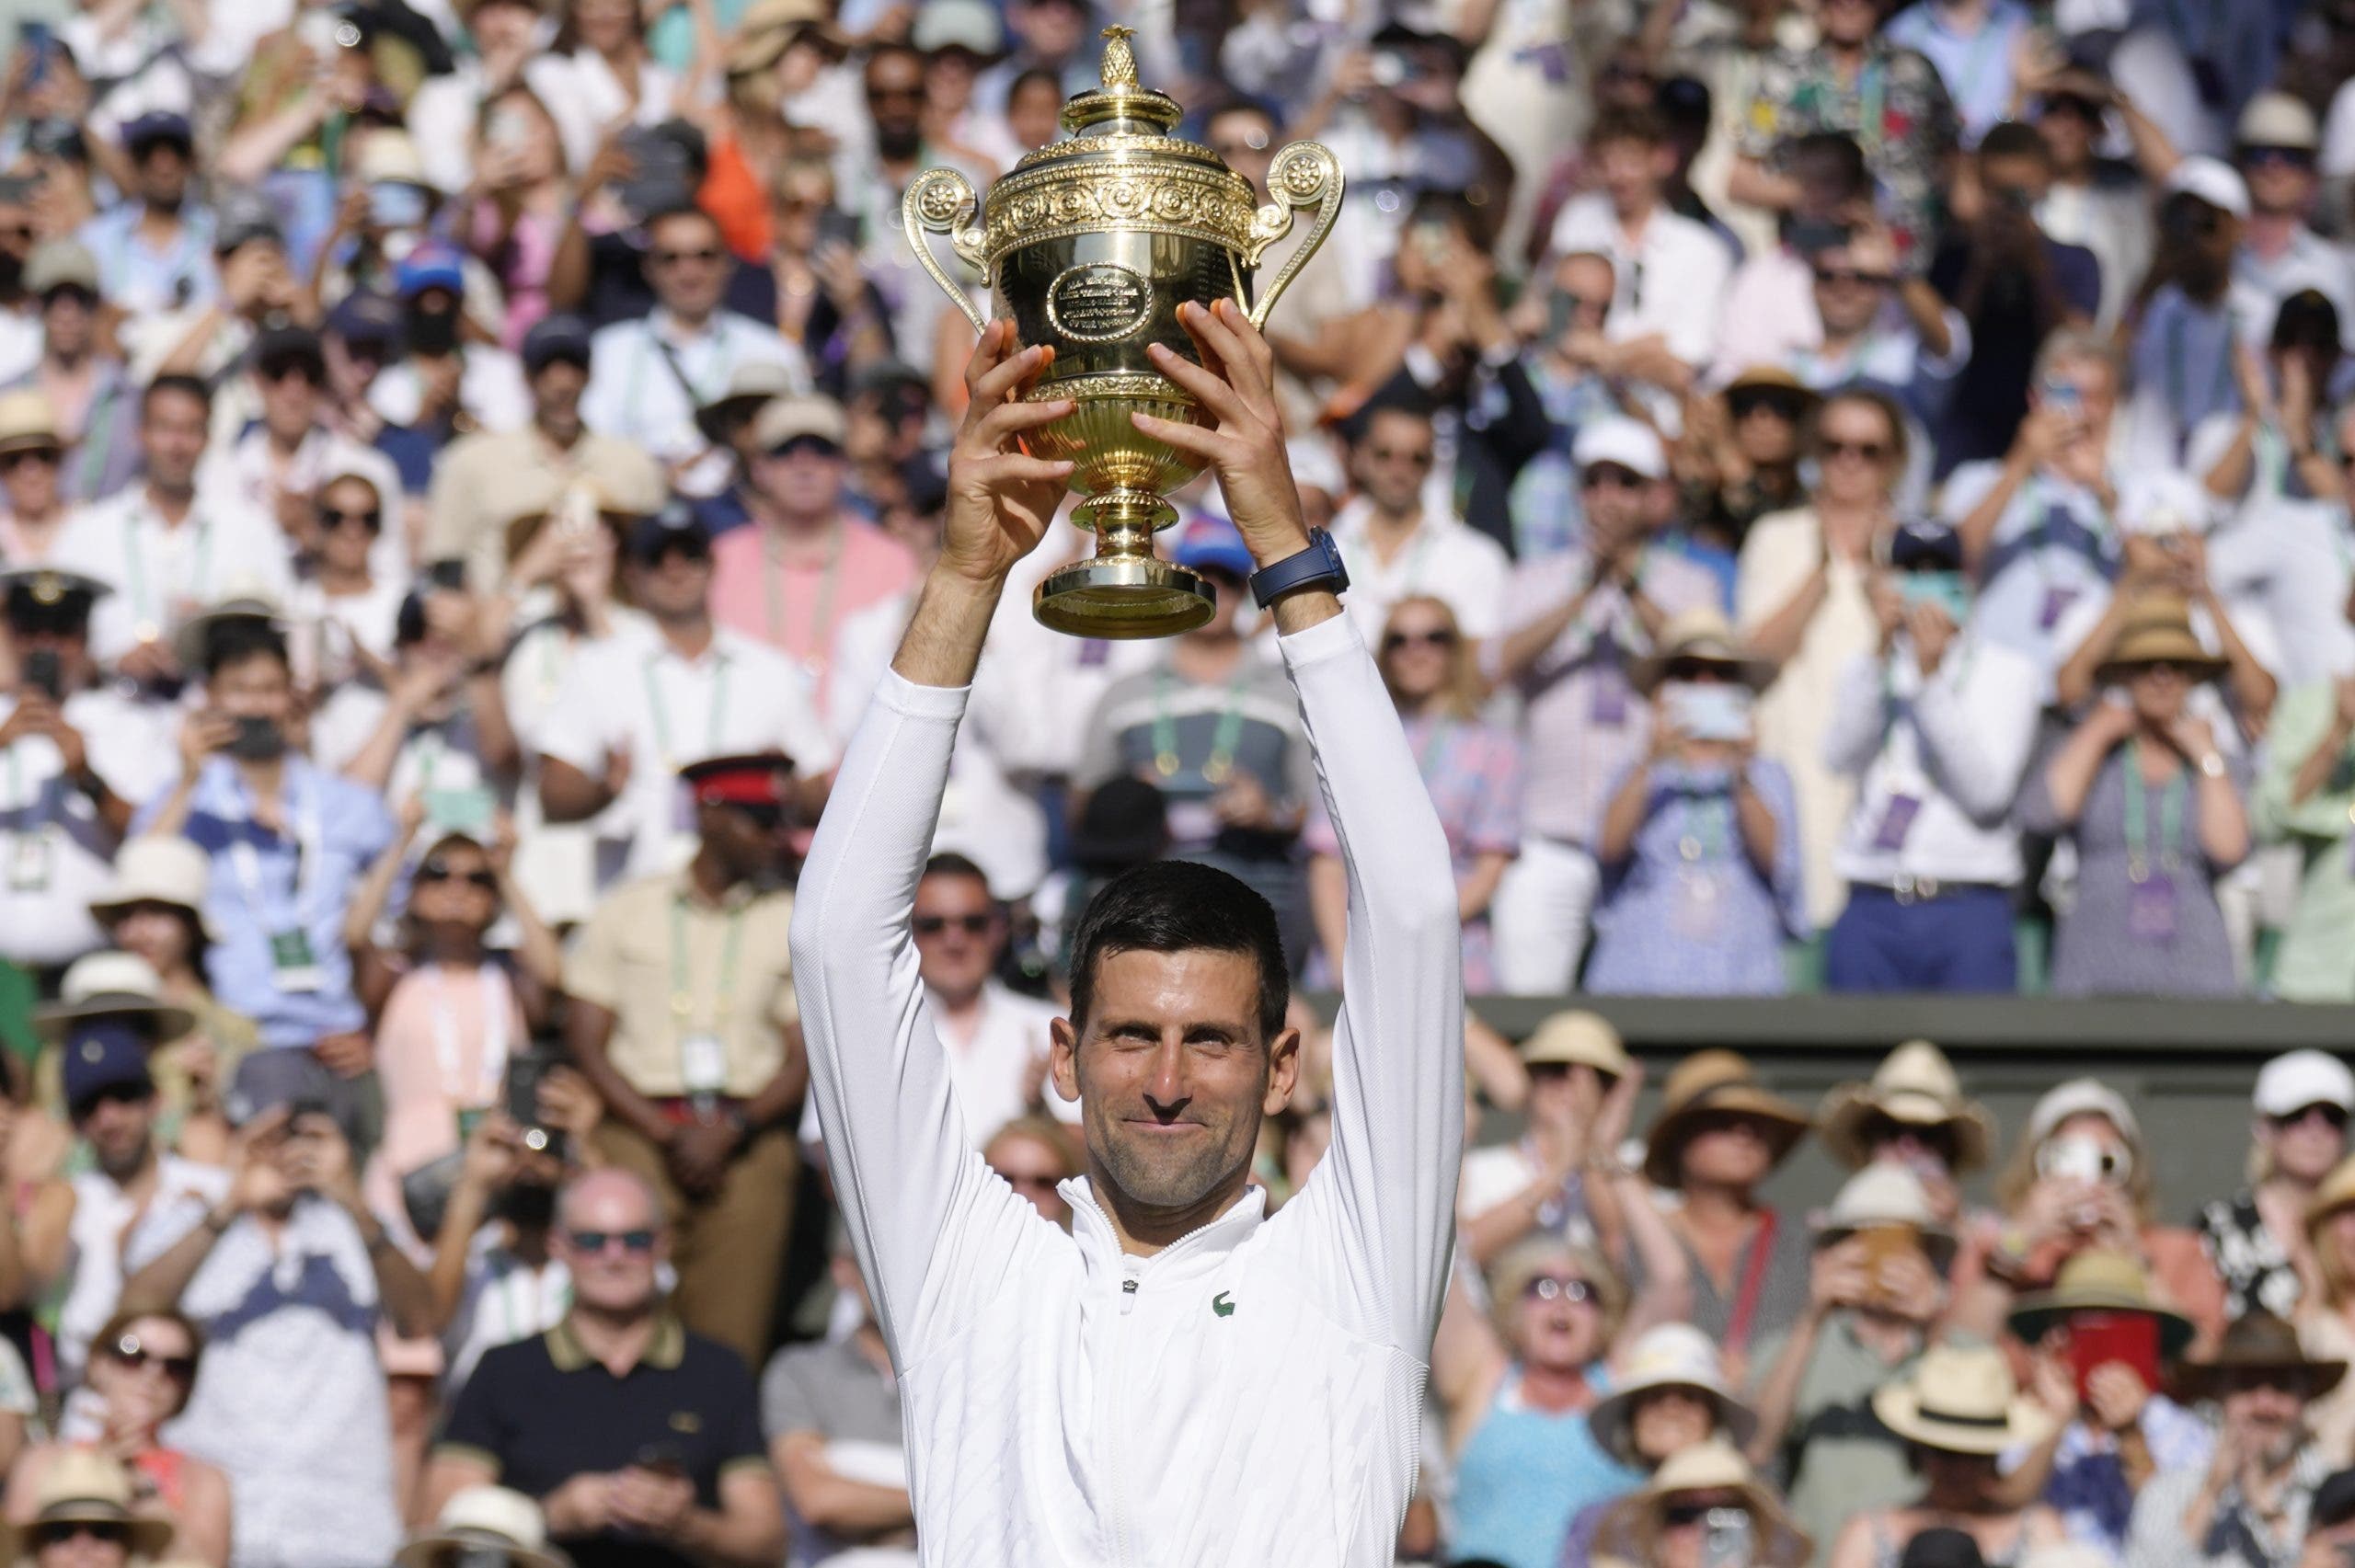 Djokovic consigue su 7mo. título en torneo Wimbledon